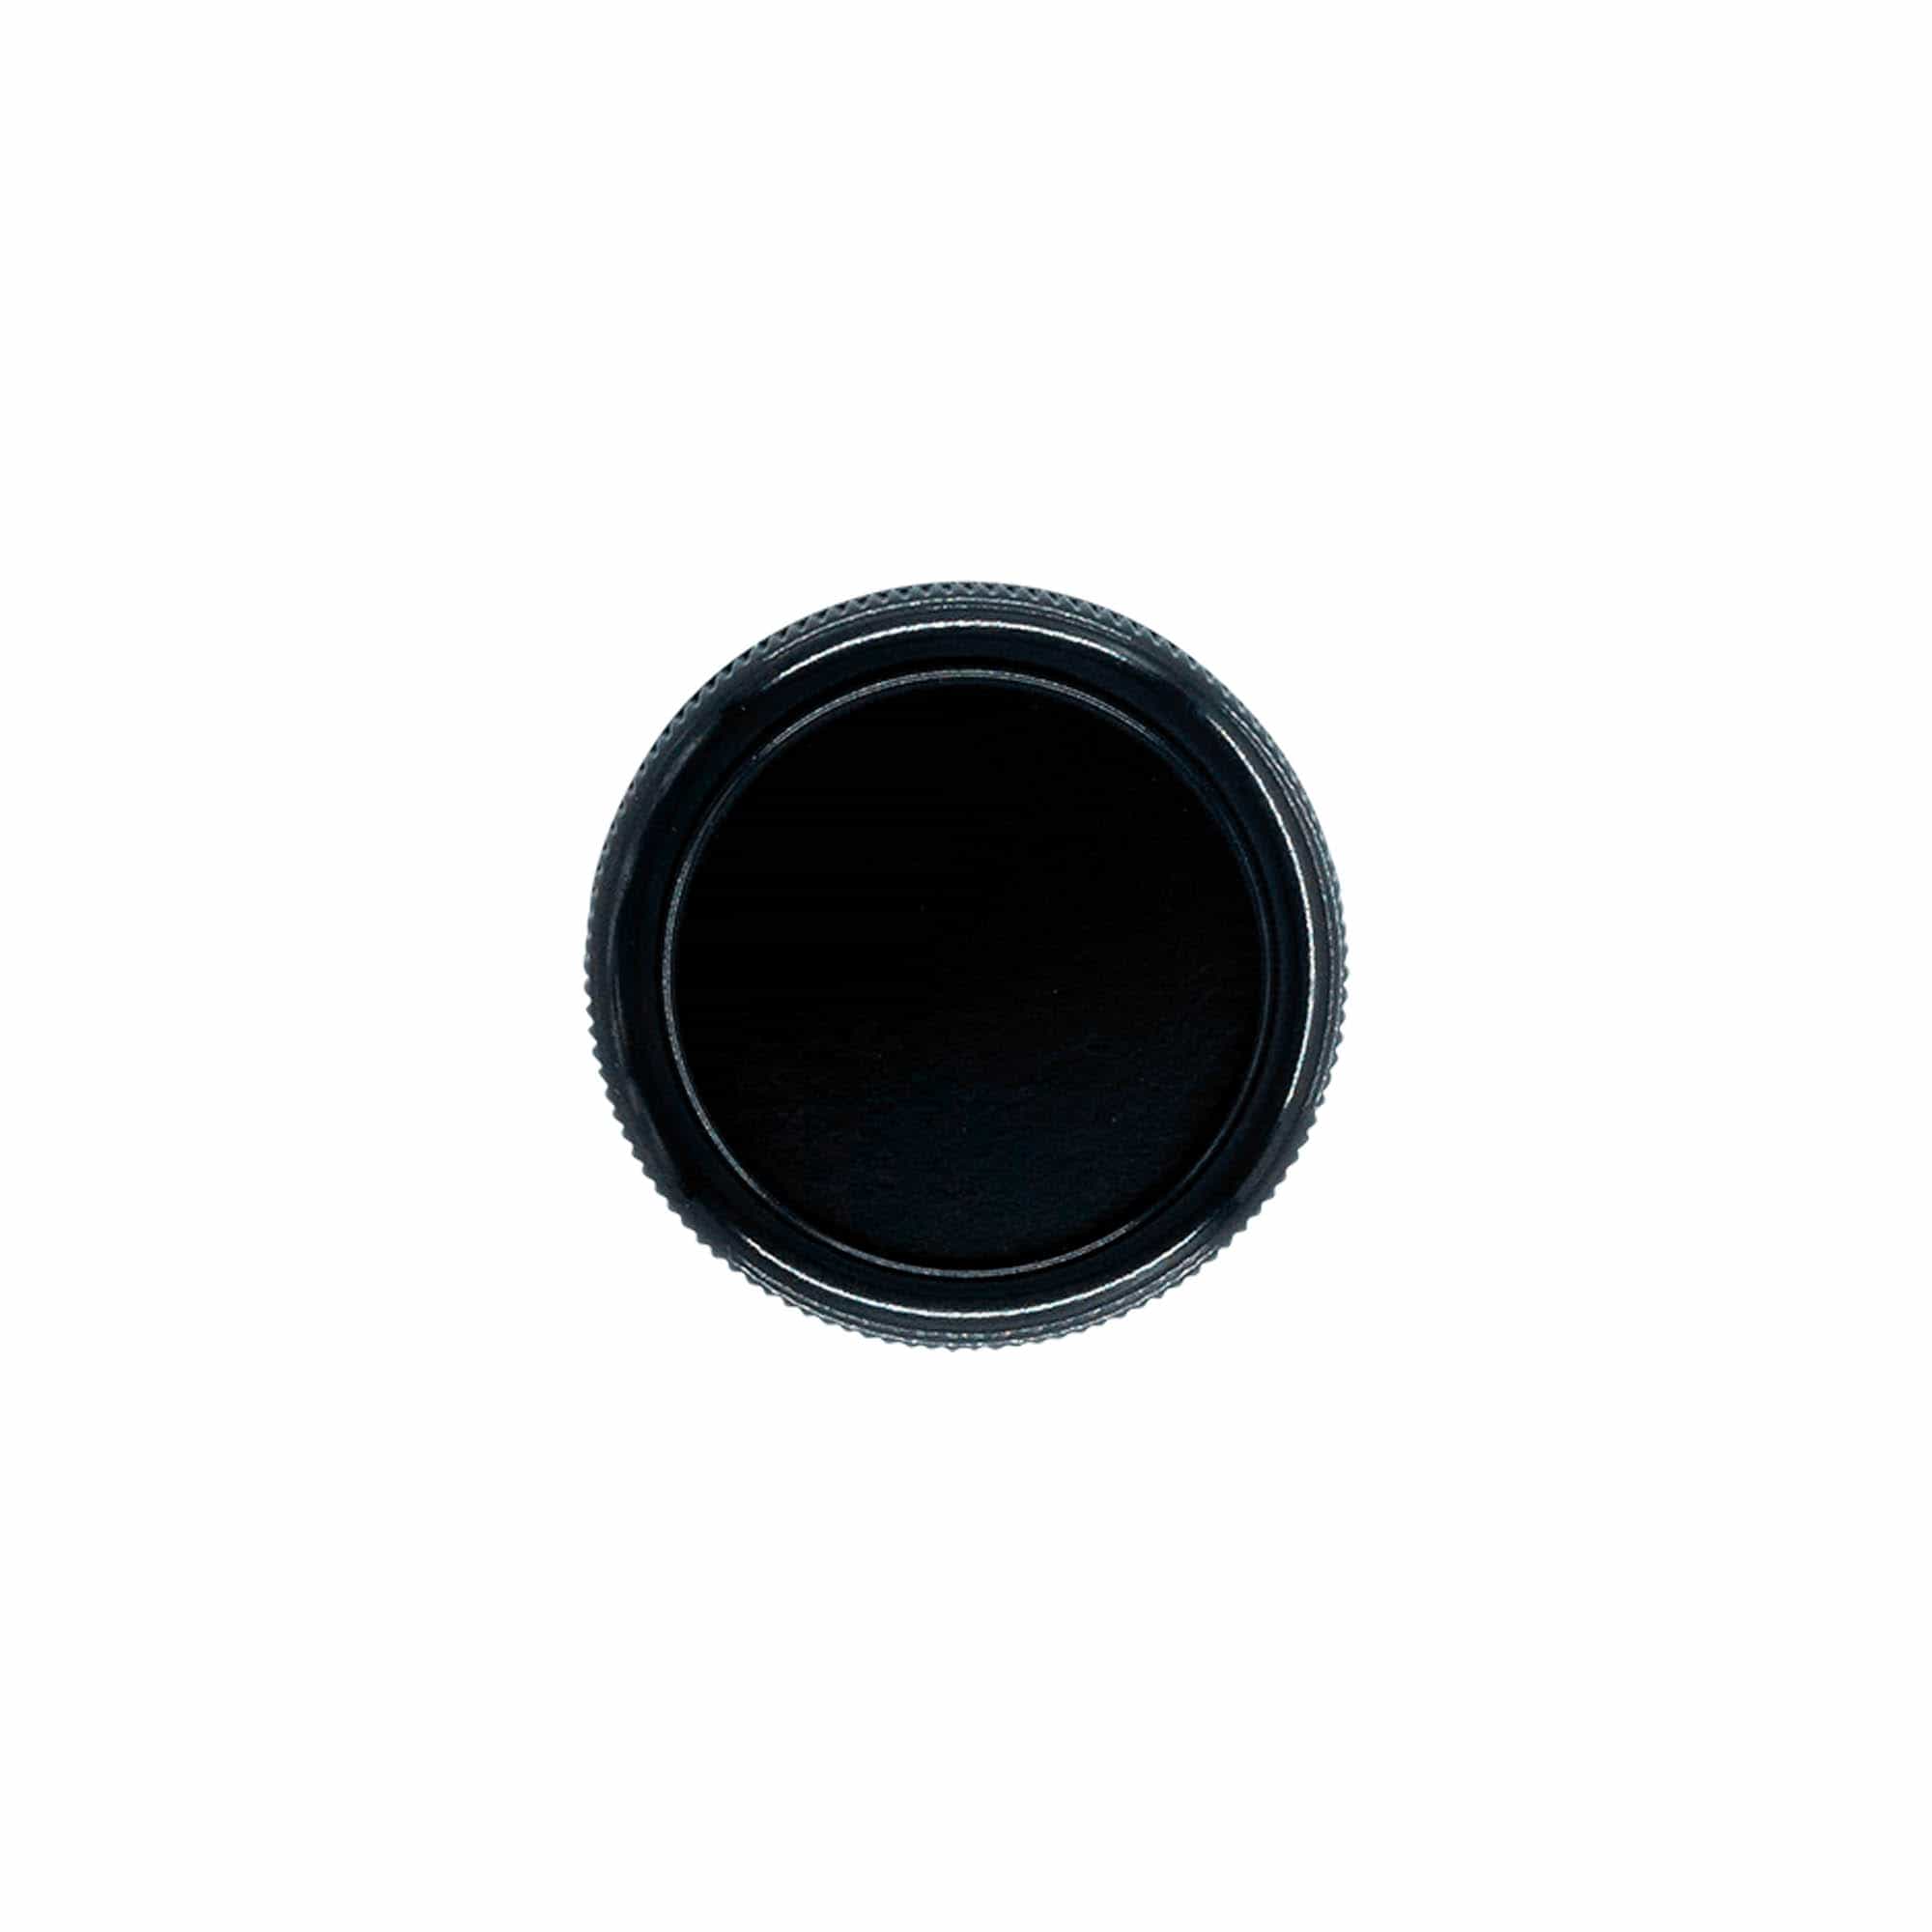 Schroefsluiting 'Inktpot', HPM-kunststof, zwart